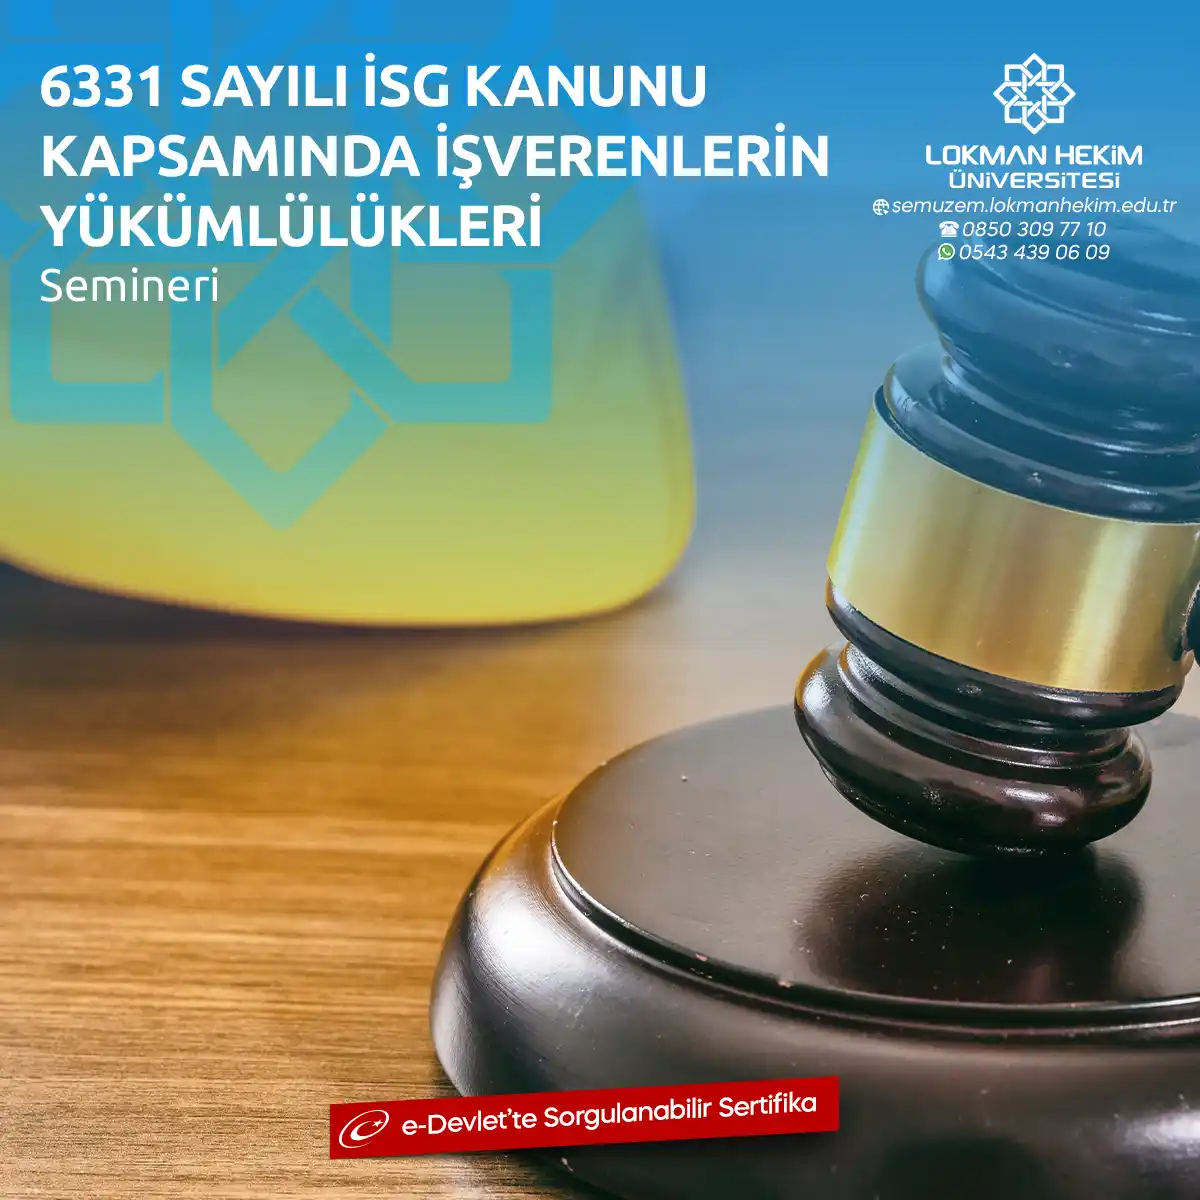 6331 Sayılı İSG Kanunu Kapsamında İşverenlerin Yükümlülükleri Semineri